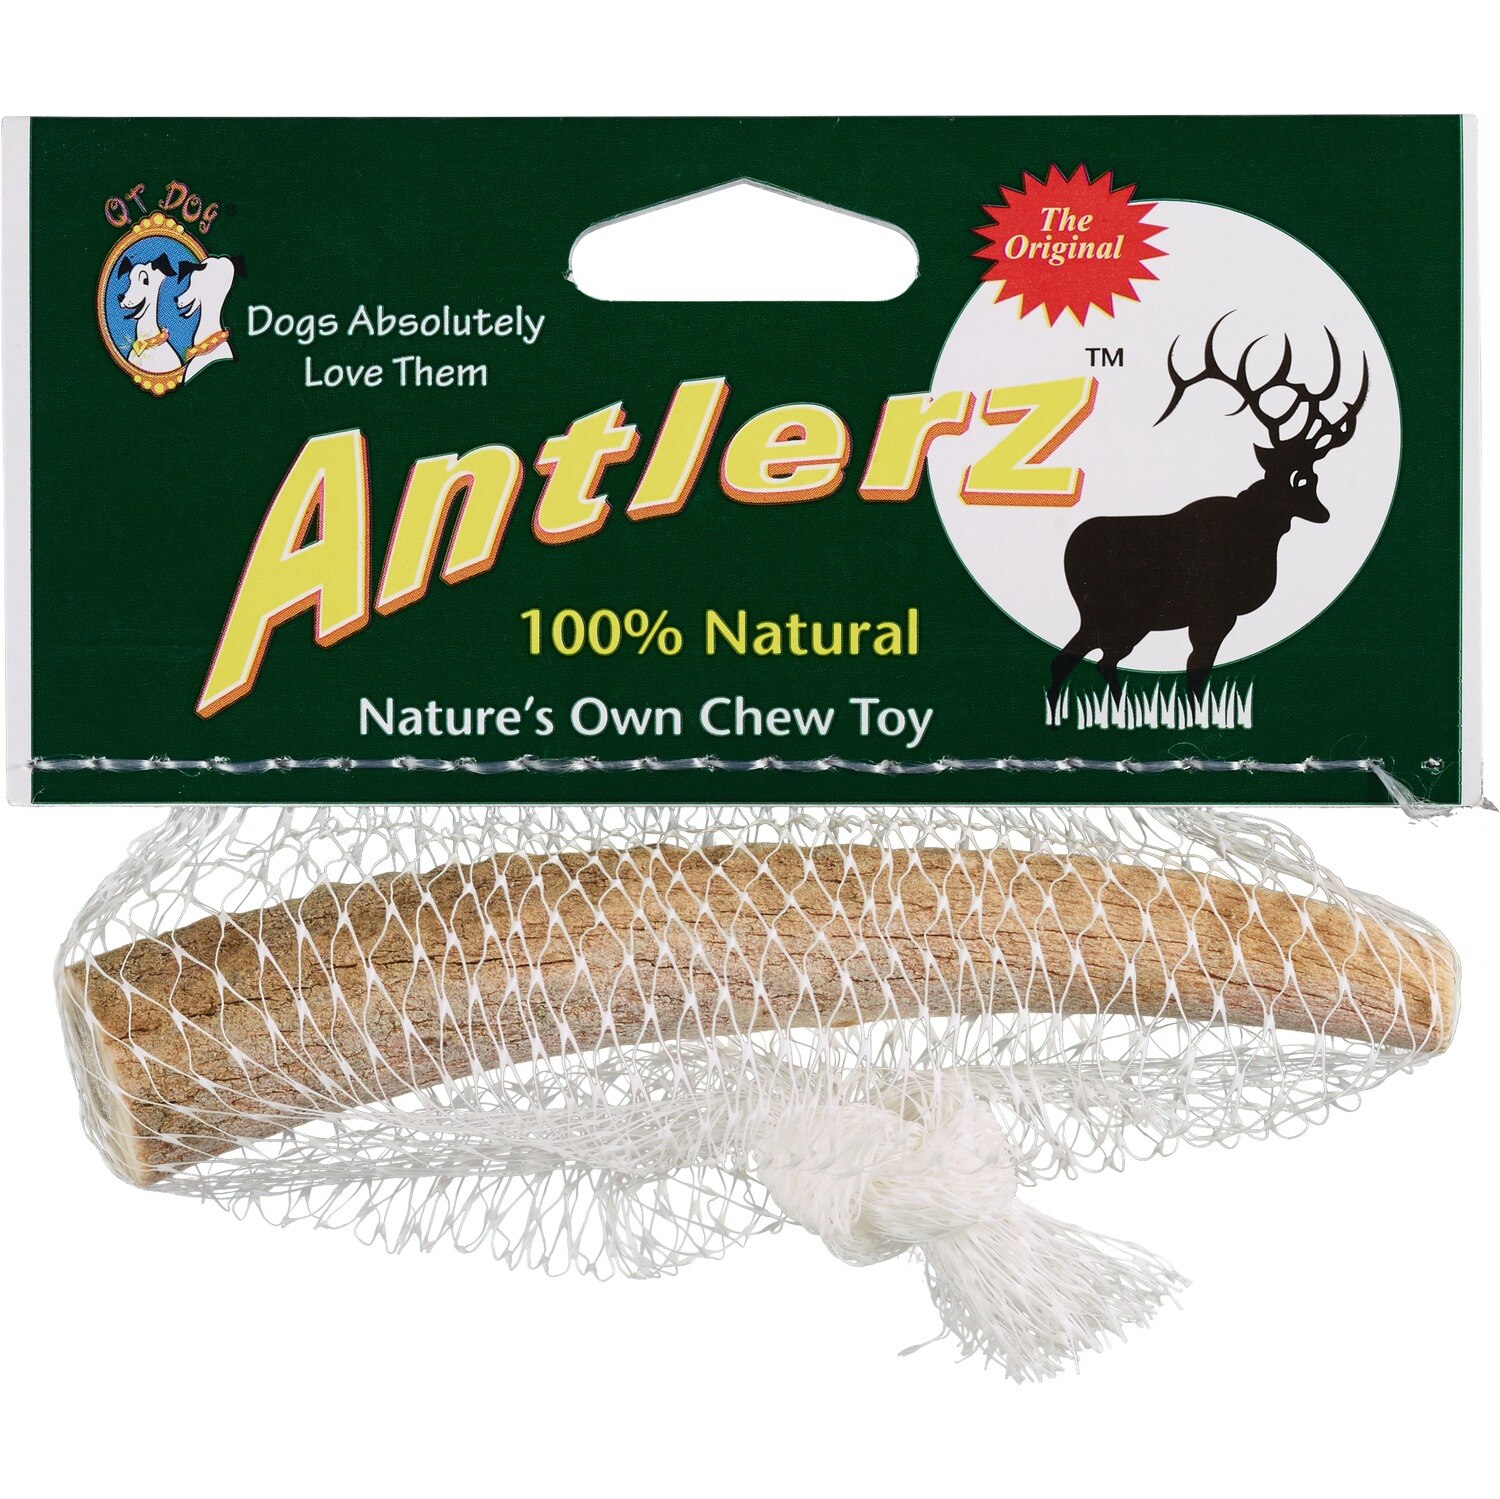  Antlerz Nature's Own Chew Toy 